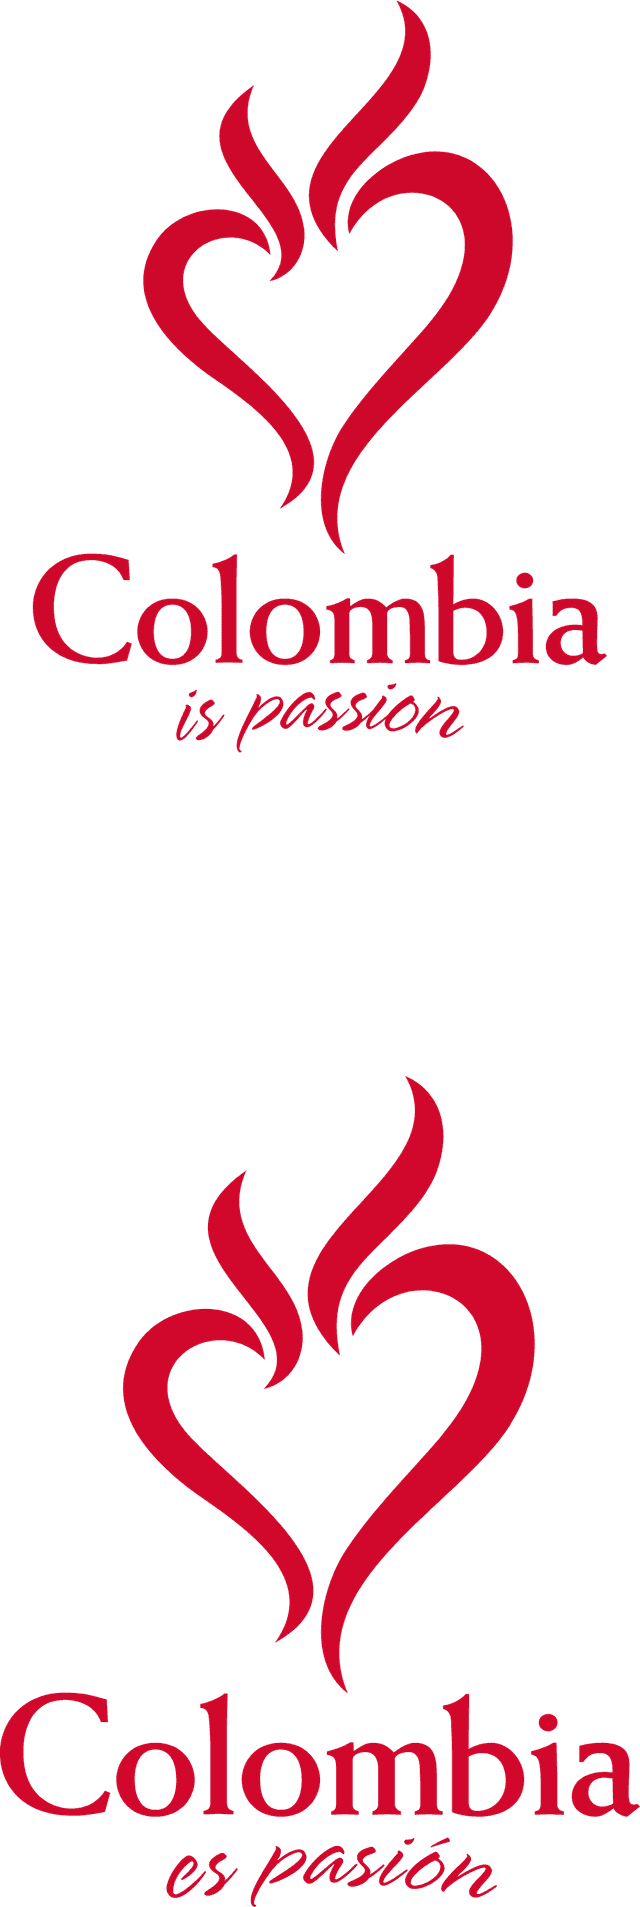 colombia es pasion _rojo Logo download